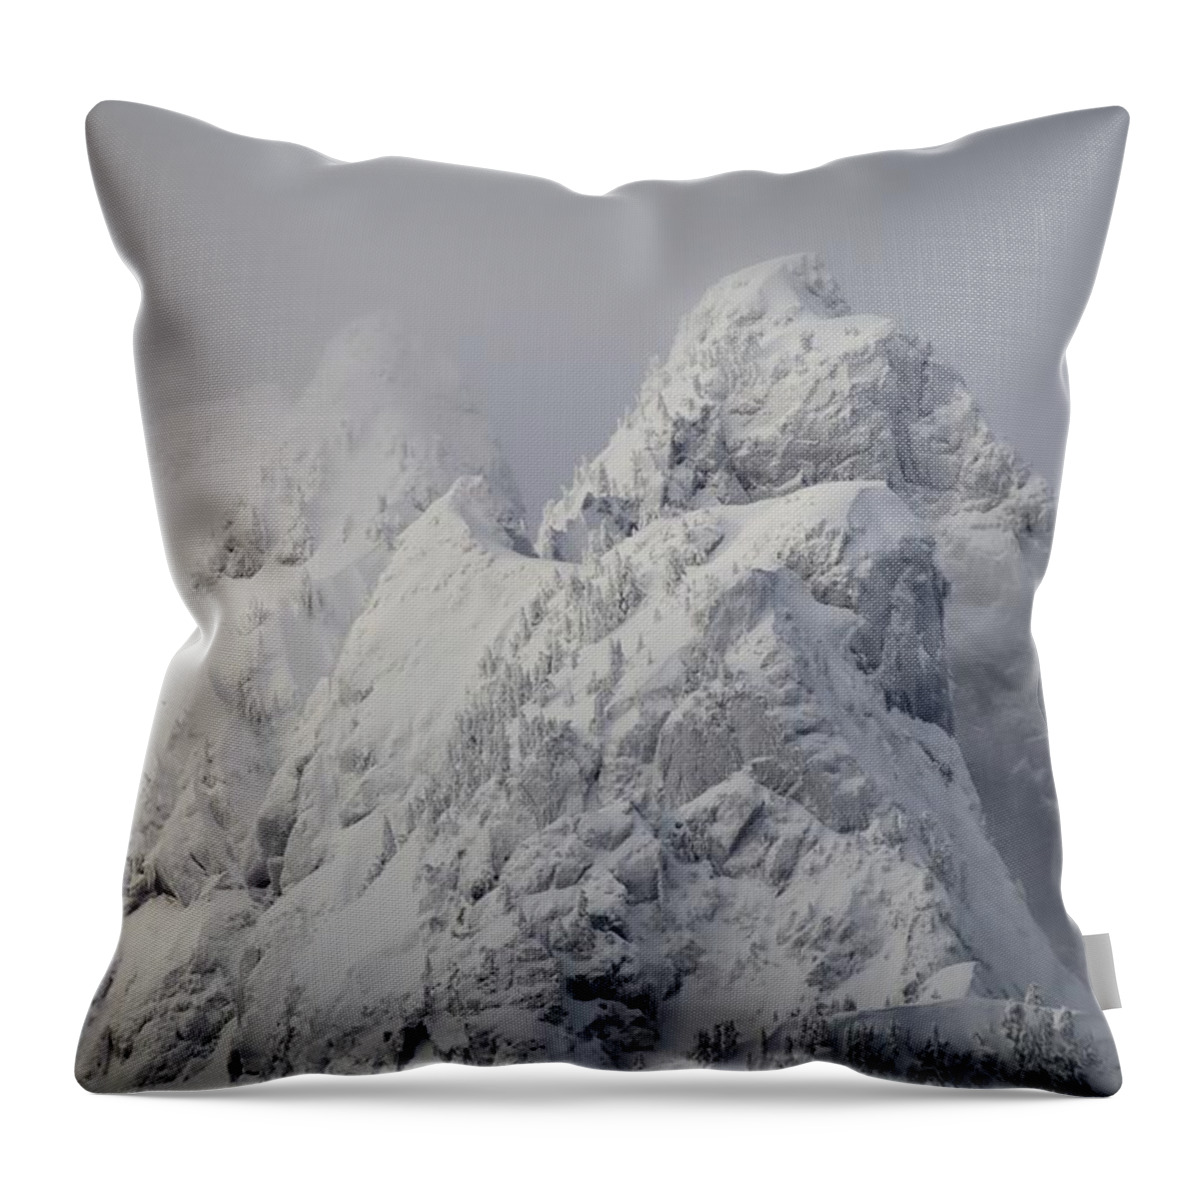 Mountain Throw Pillow featuring the photograph Mountain Snow Peak Blizzard by Ian McAdie